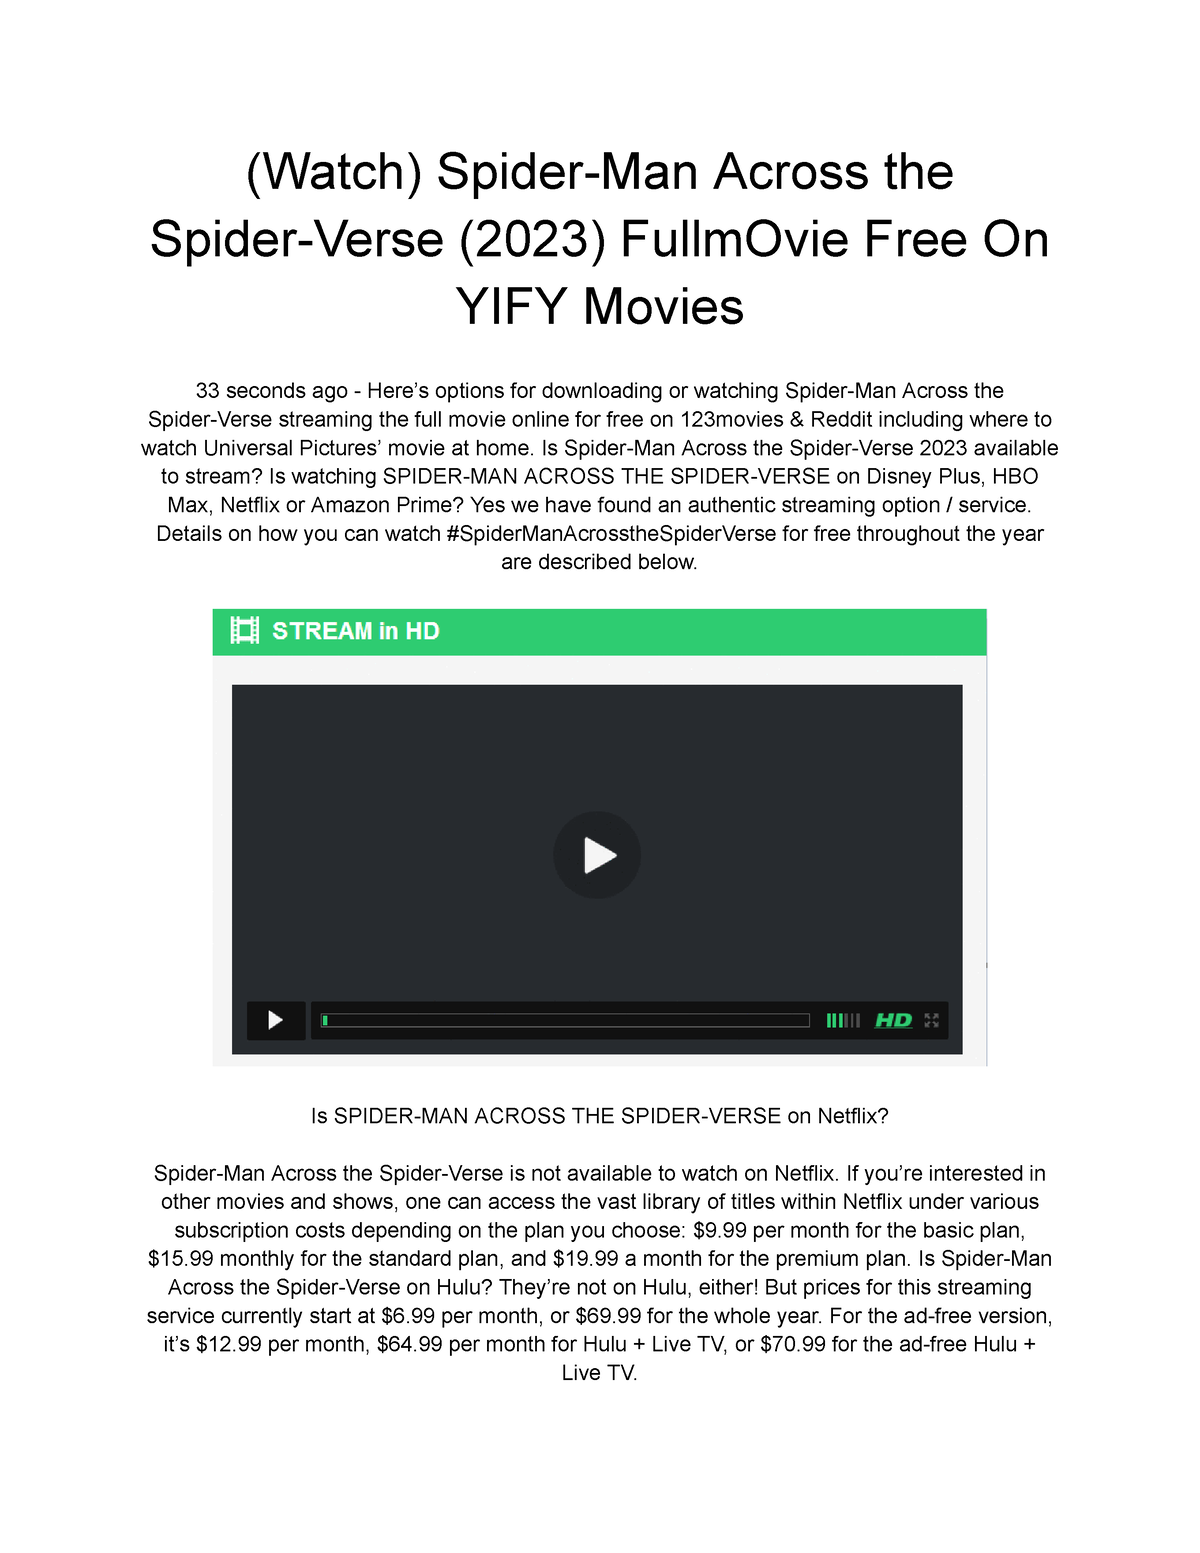 WATCH Spider-Man: Across the Spider-Verse (2023) FULLMOVIE FREE